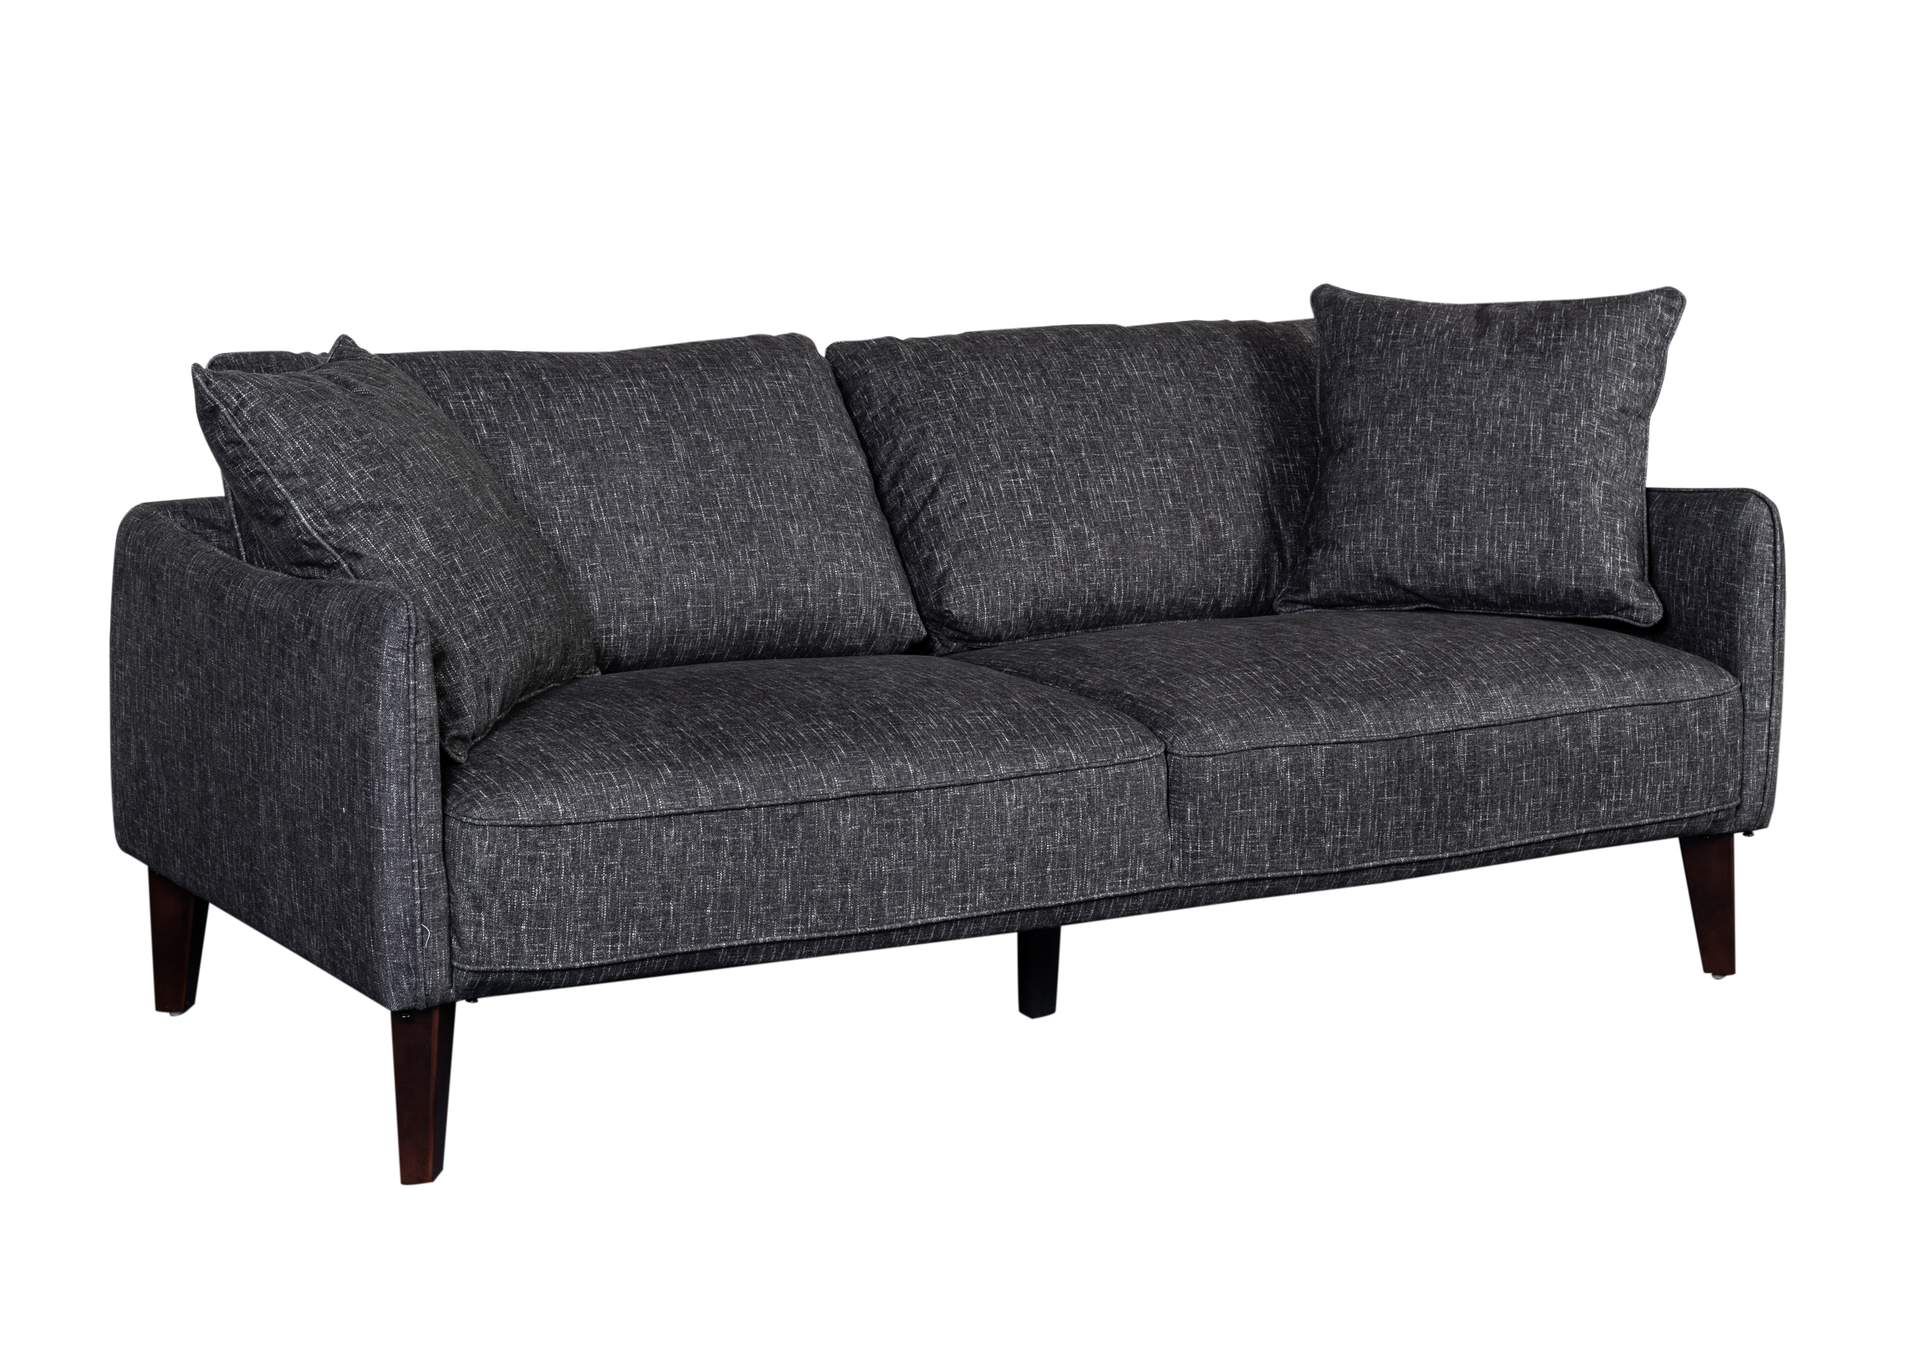 Asher U5205 Rhf Sofa (Cn),Porter Designs